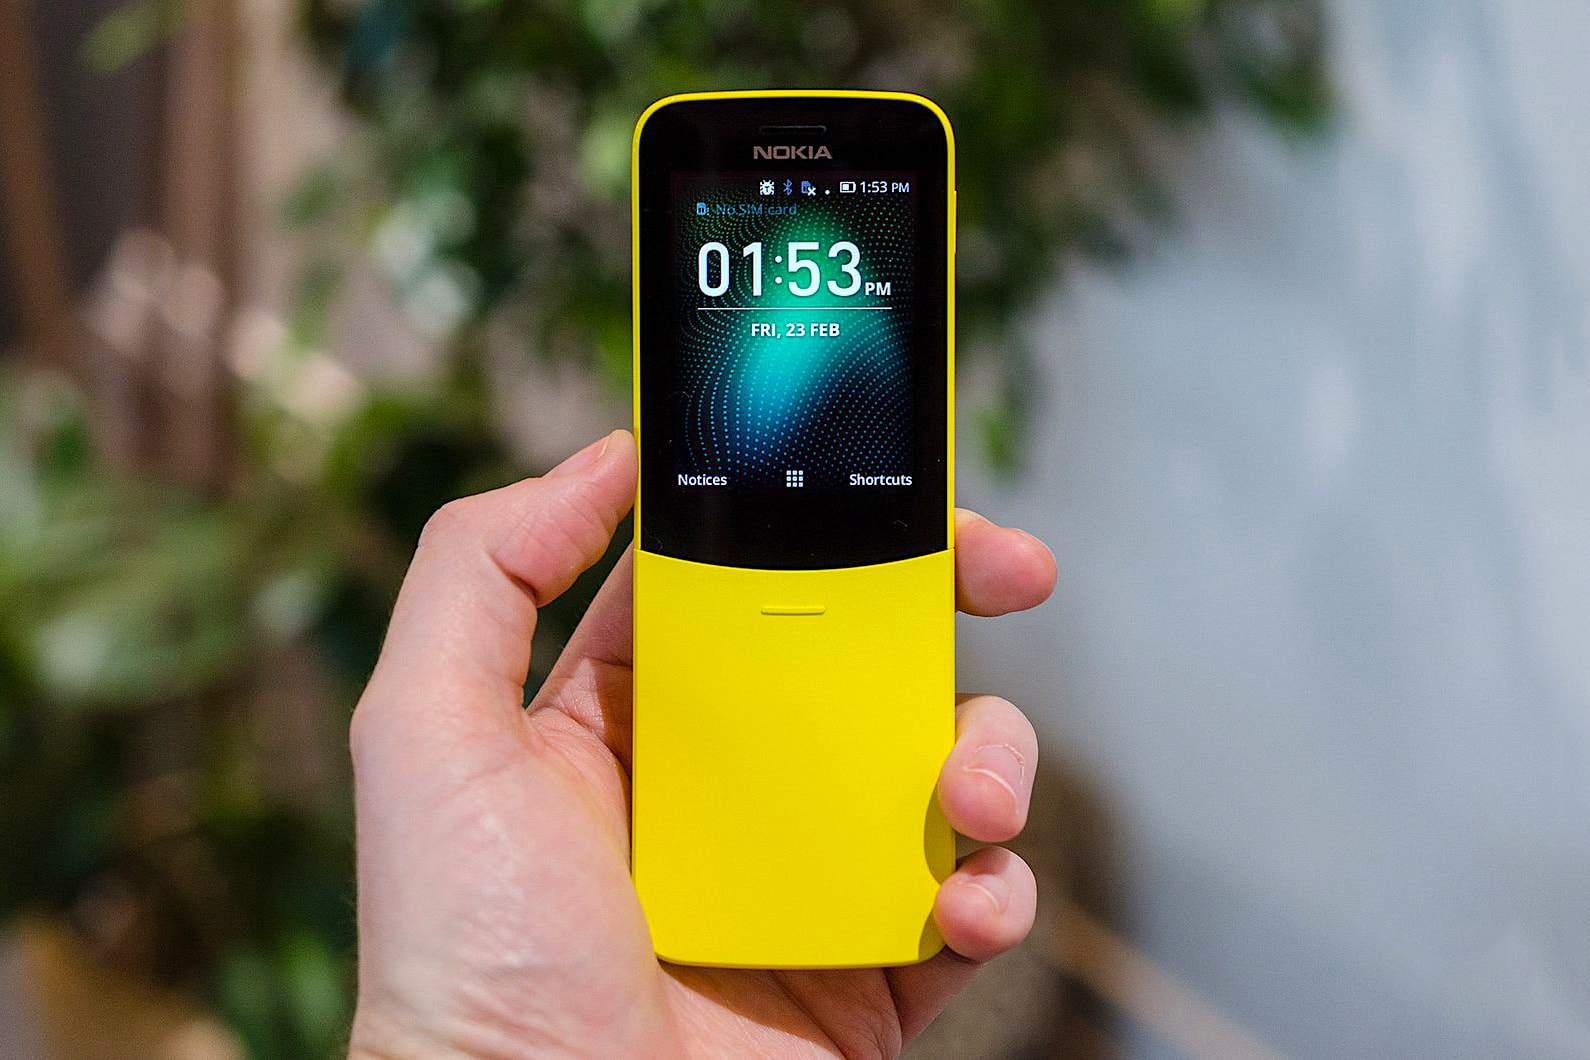 Nokia 重新復刻《The Matrix》中的經典下滑蓋手機 8110